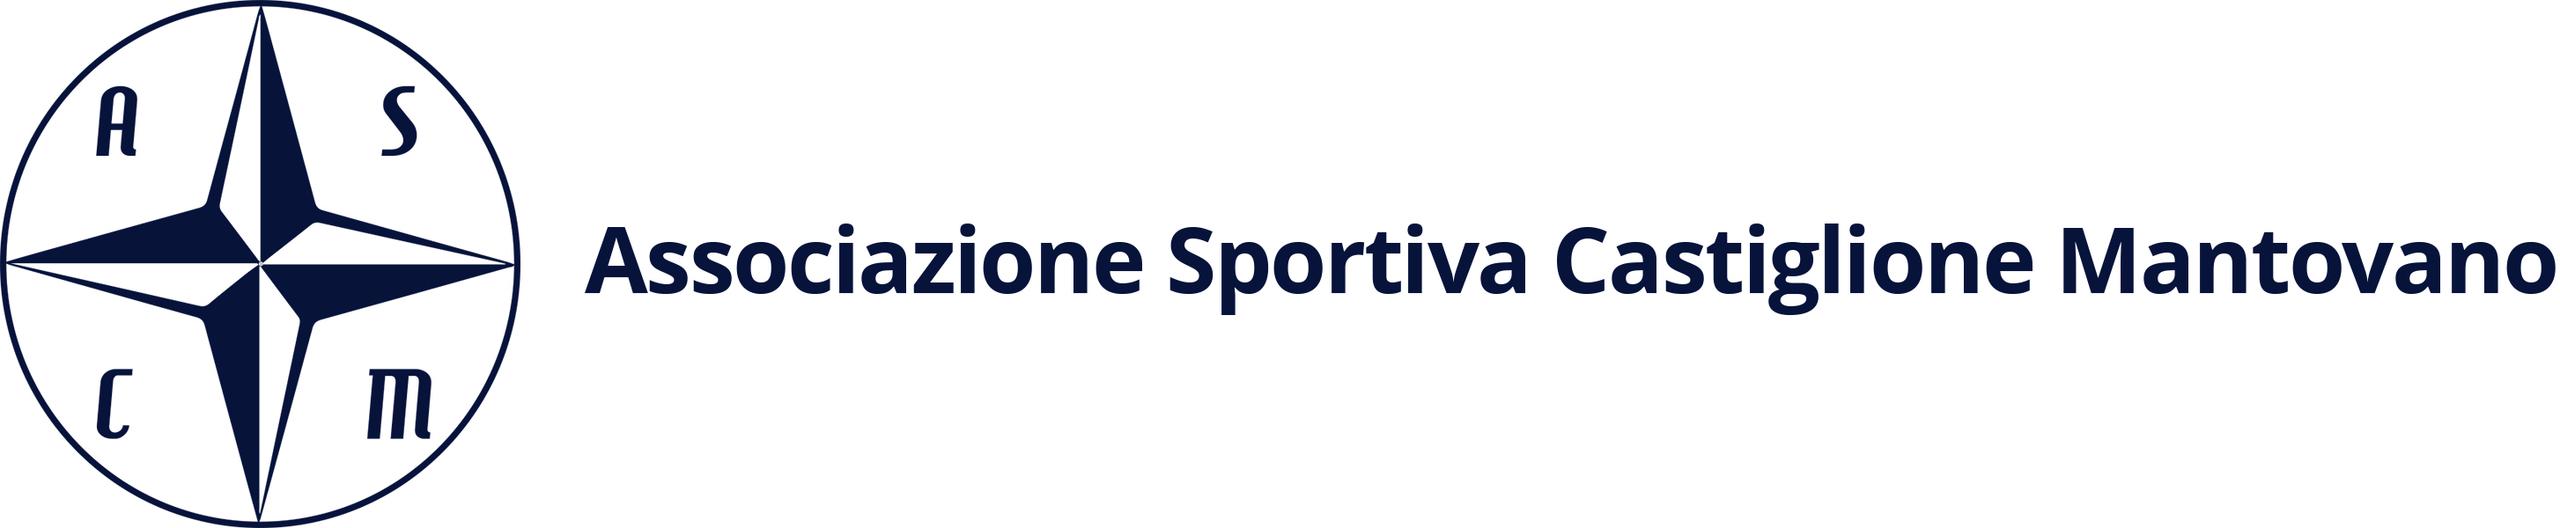 Associazione Sportiva Castiglione Mantovano